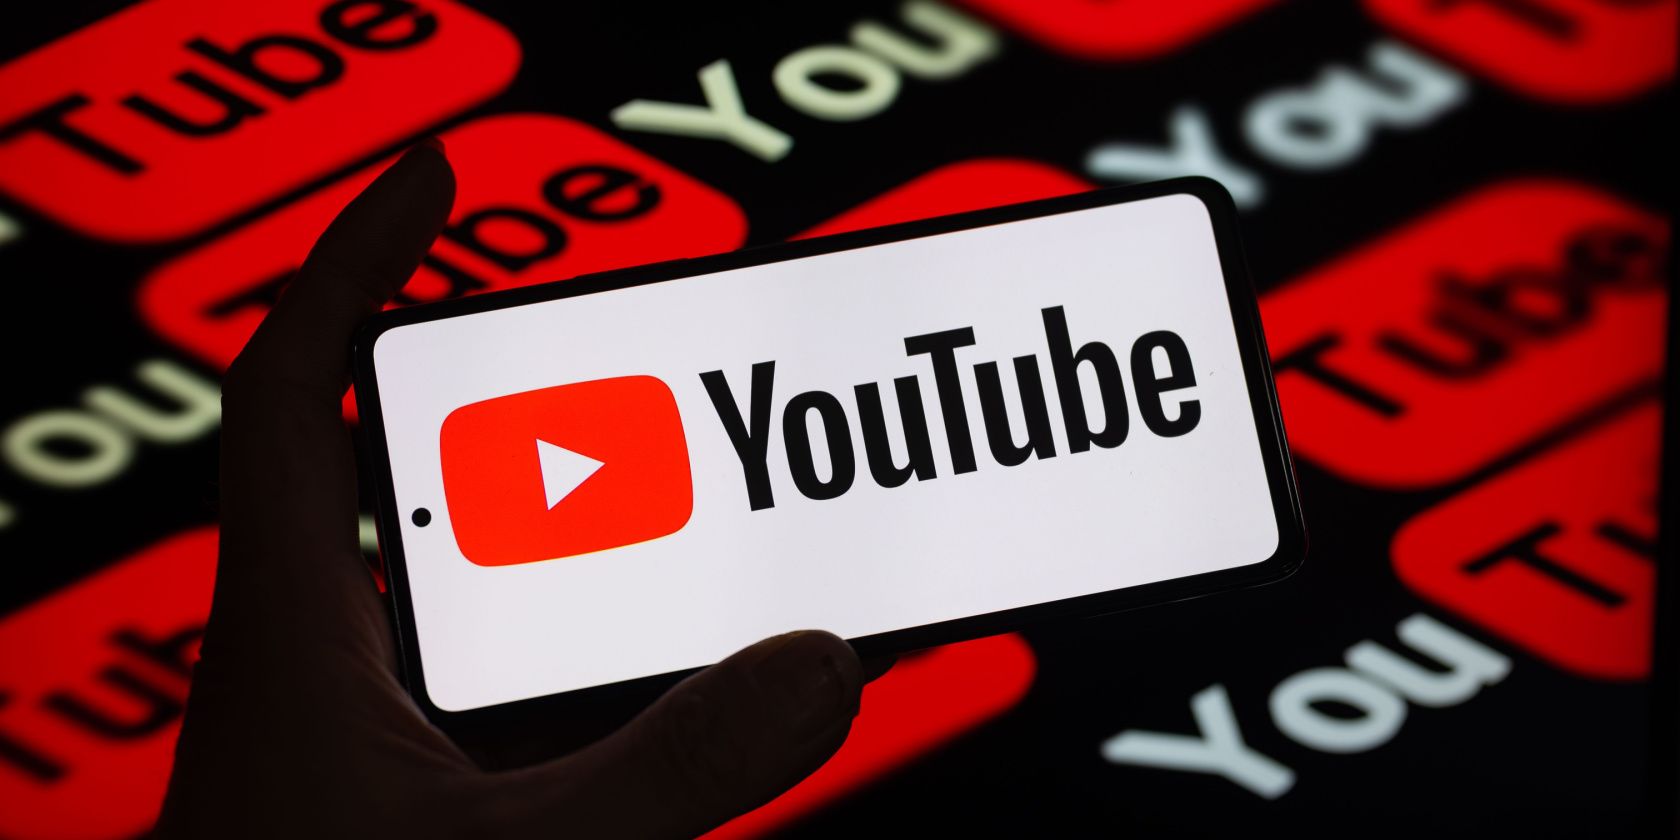 YouTube Logo on Smartphone Against YouTube Logos Background